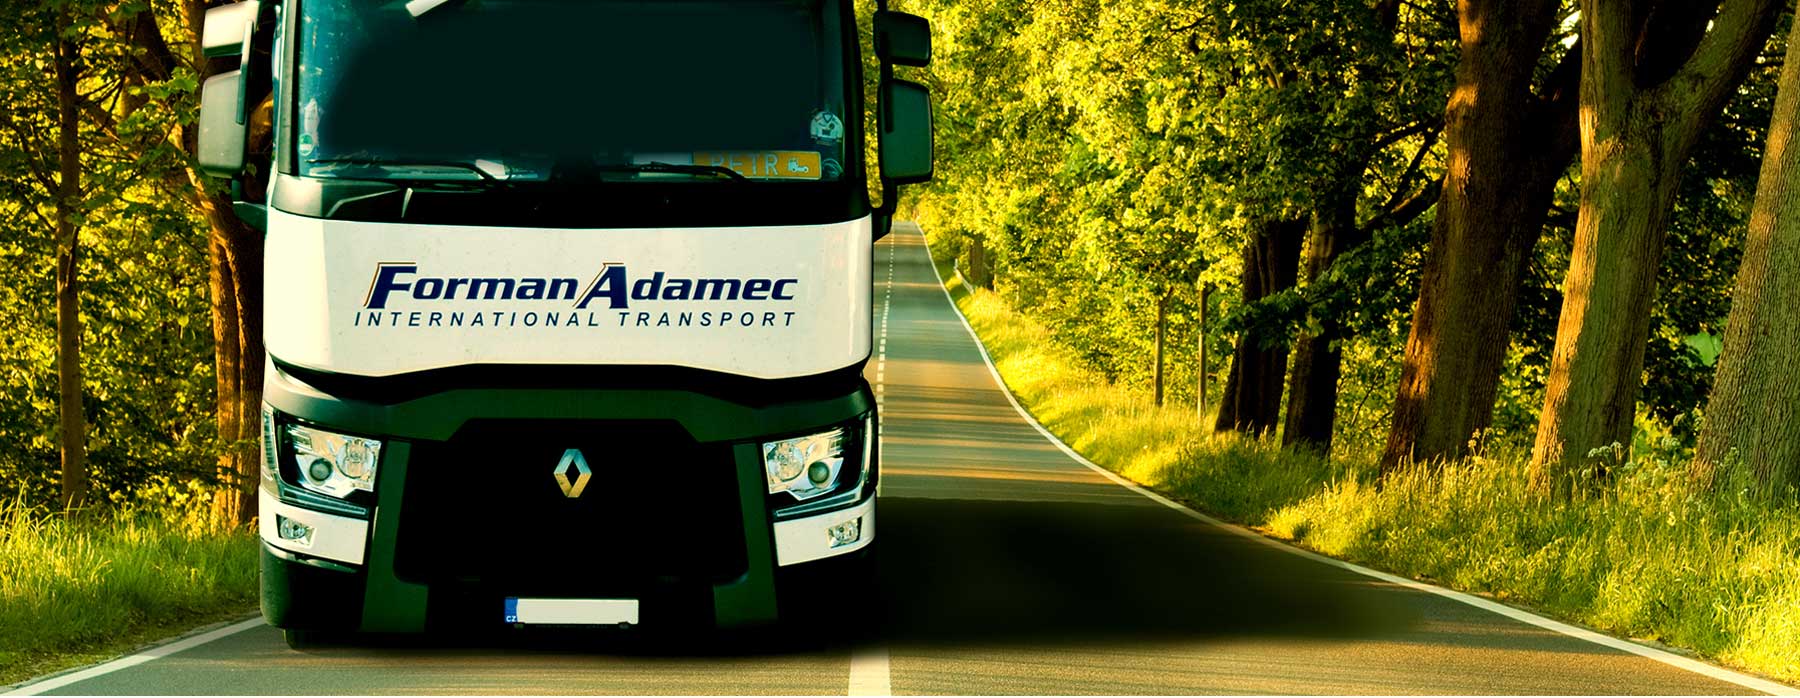 Forman Adamec - International Transport